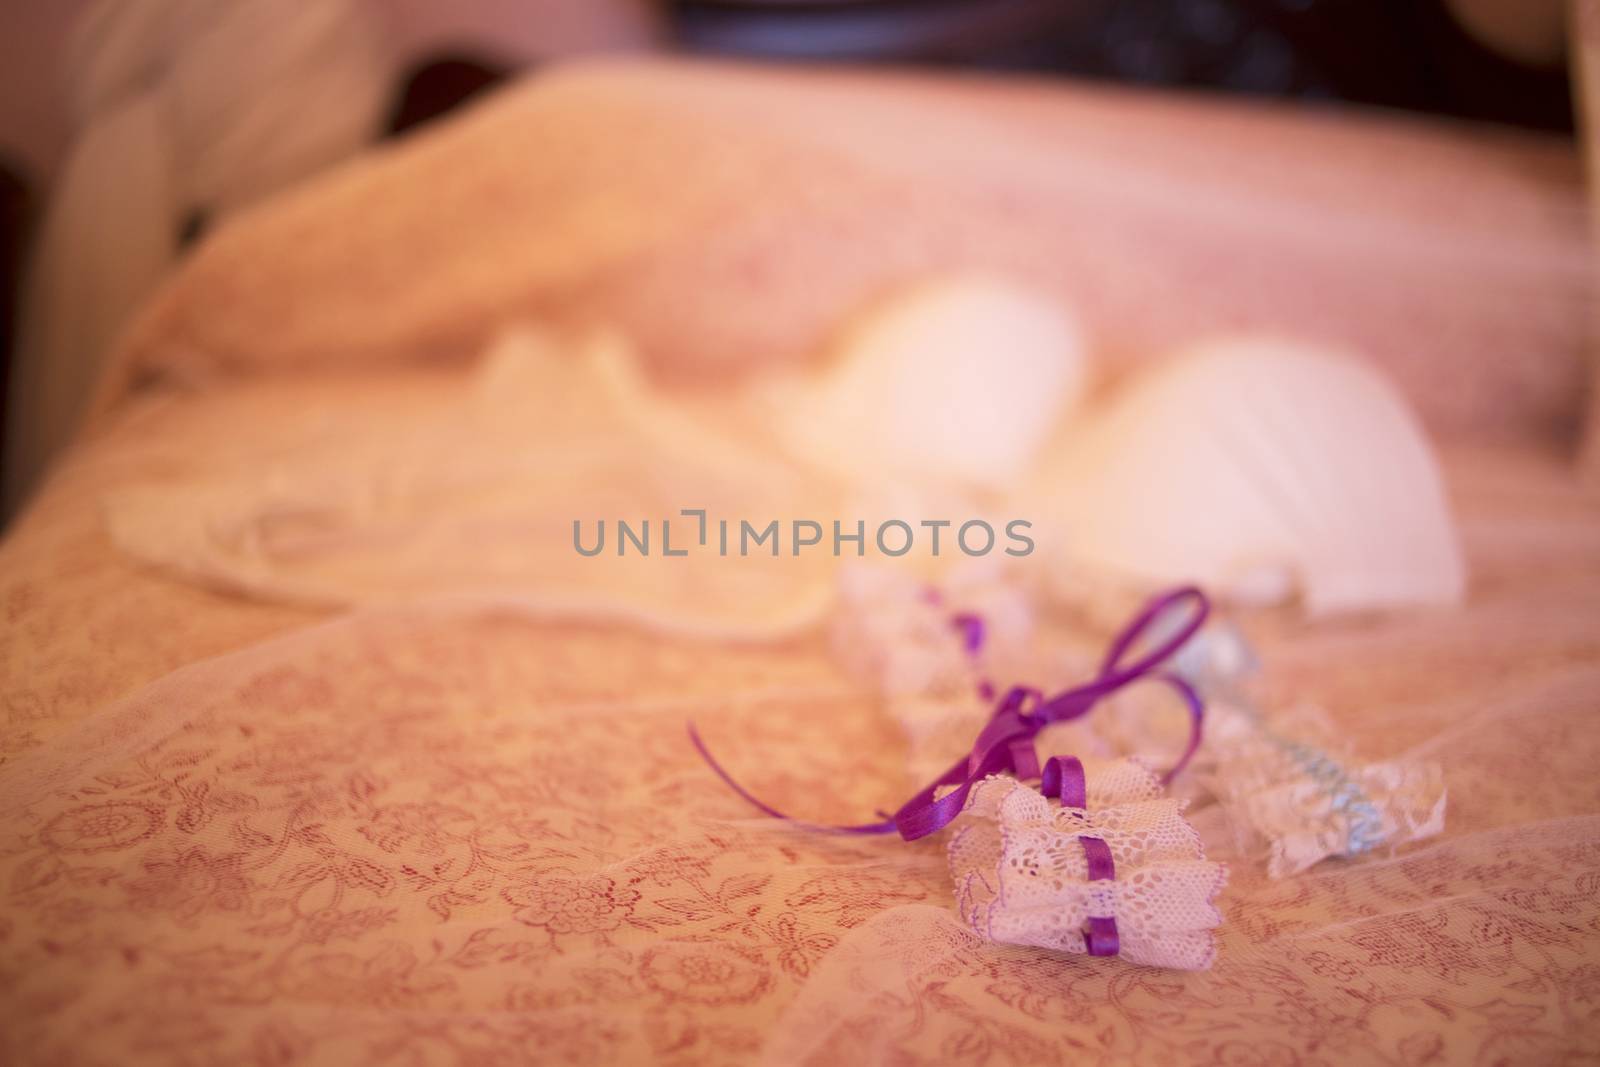 Wedding bridal garter belt underwear lingerie on bed  by edwardolive